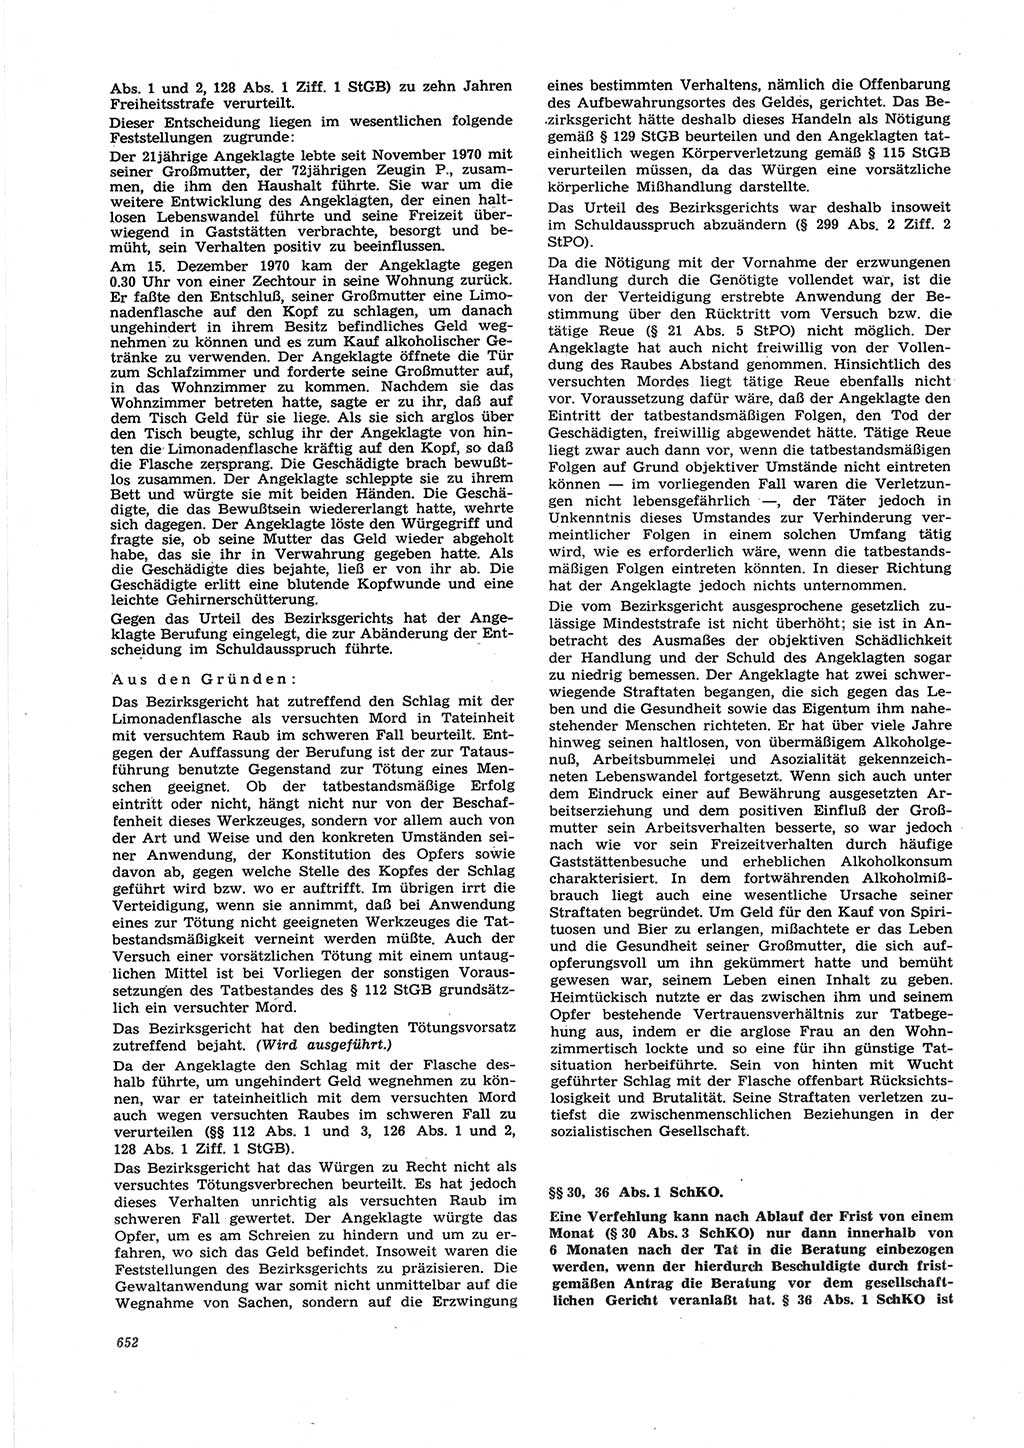 Neue Justiz (NJ), Zeitschrift für Recht und Rechtswissenschaft [Deutsche Demokratische Republik (DDR)], 25. Jahrgang 1971, Seite 652 (NJ DDR 1971, S. 652)